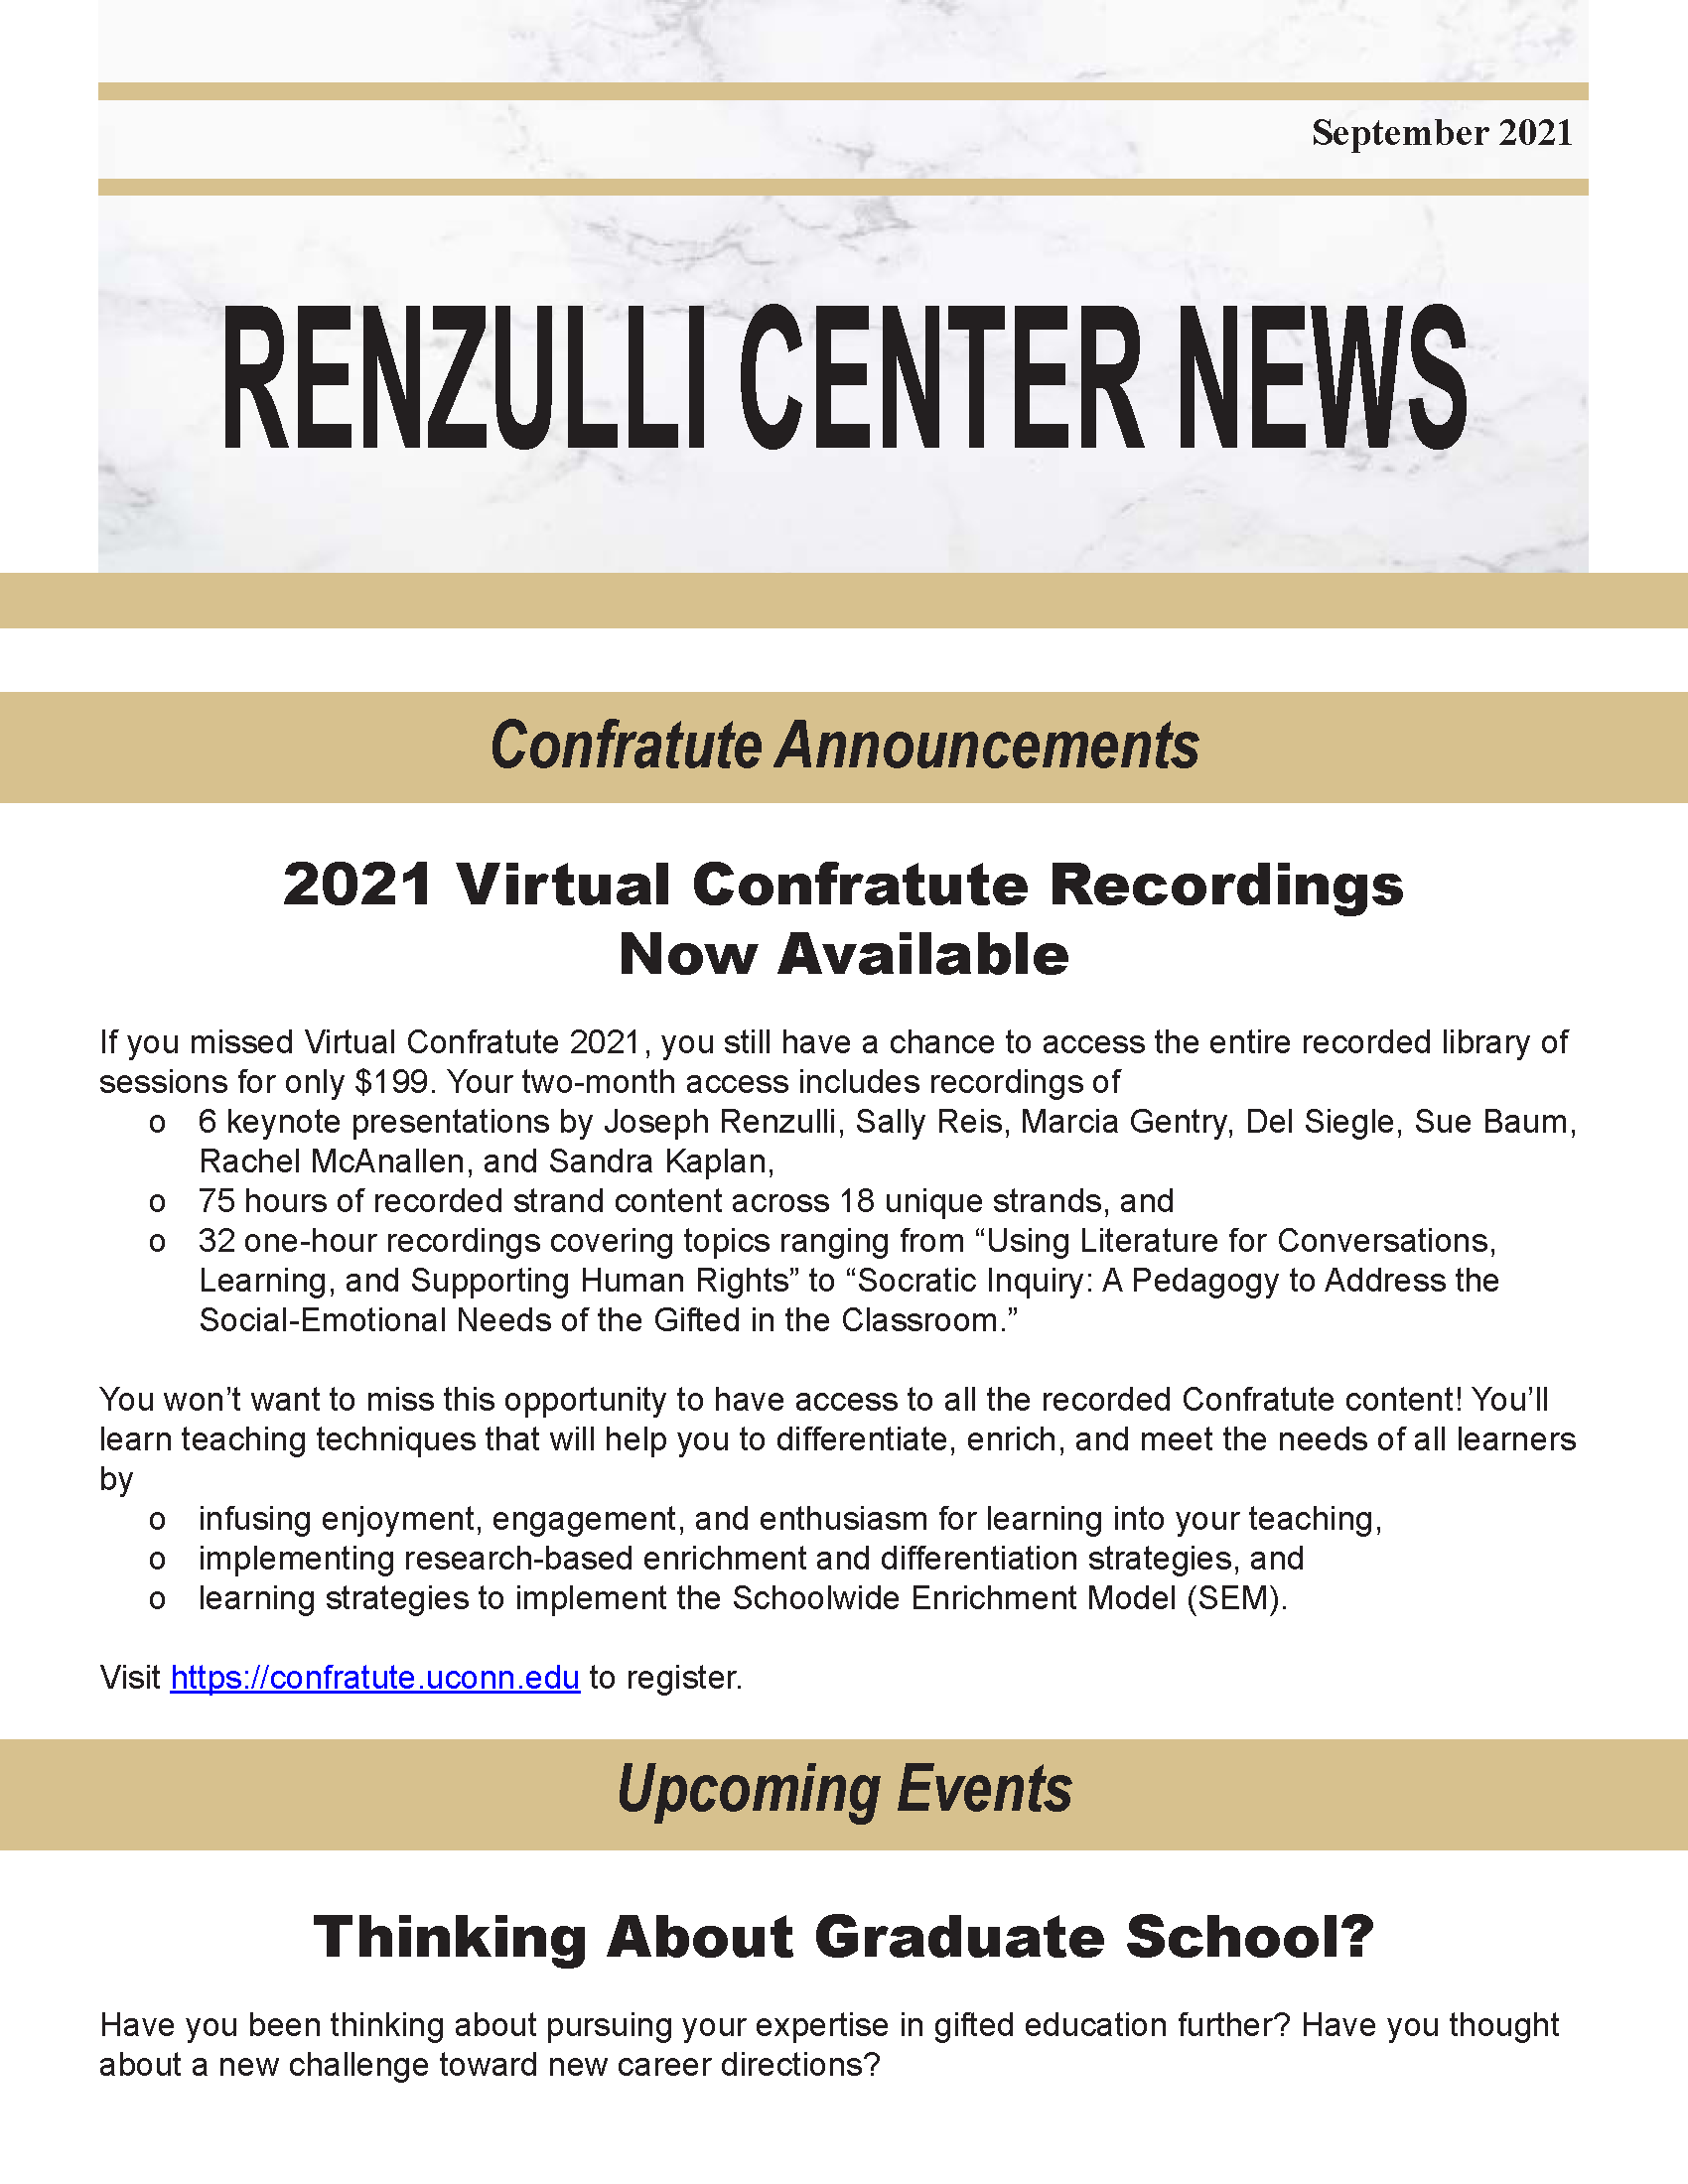 September 2021 Renzulli News Cover Graphic